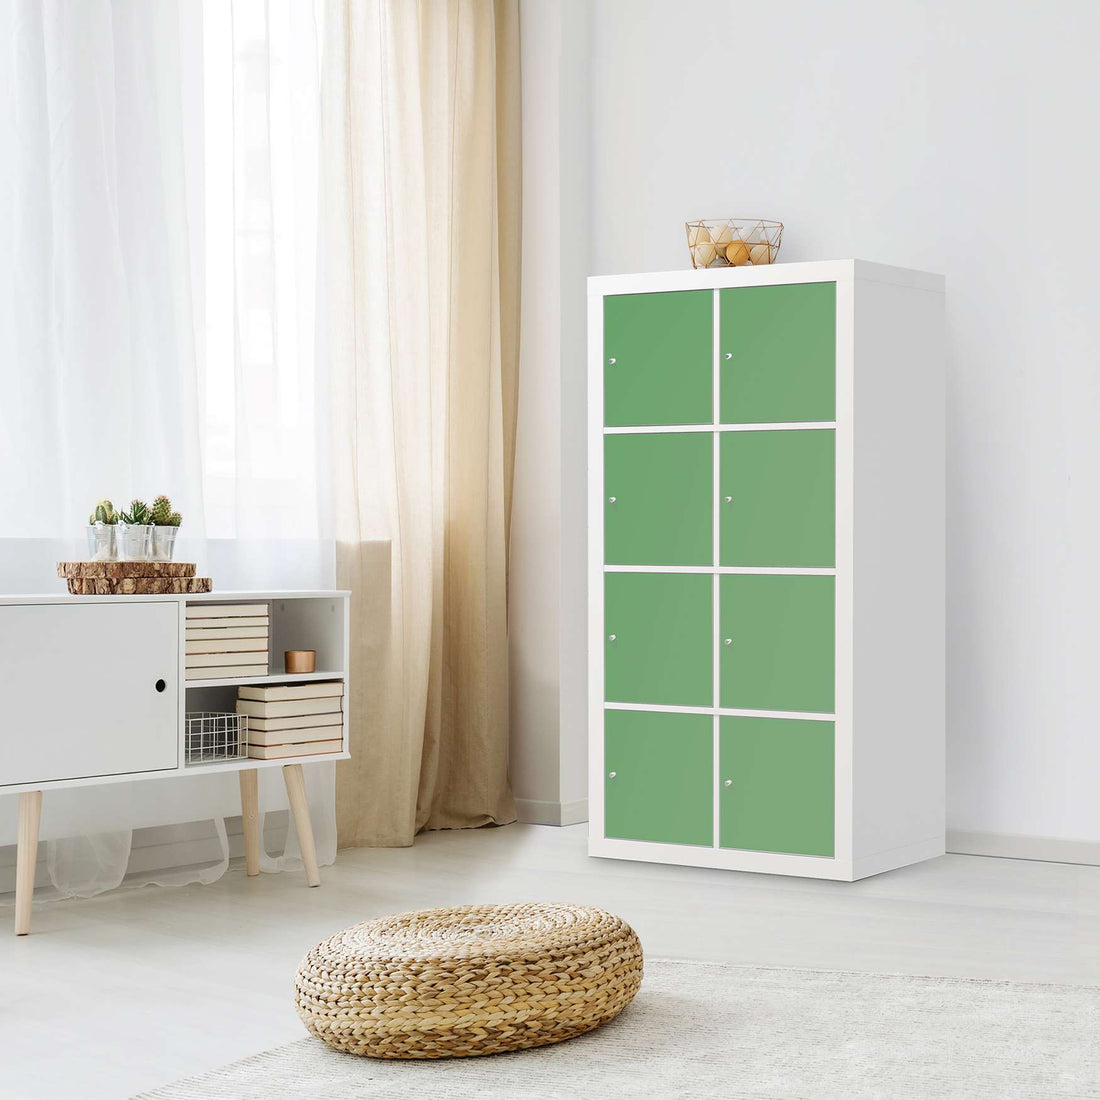 Folie für Möbel Grün Light - IKEA Kallax Regal 8 Türen - Wohnzimmer